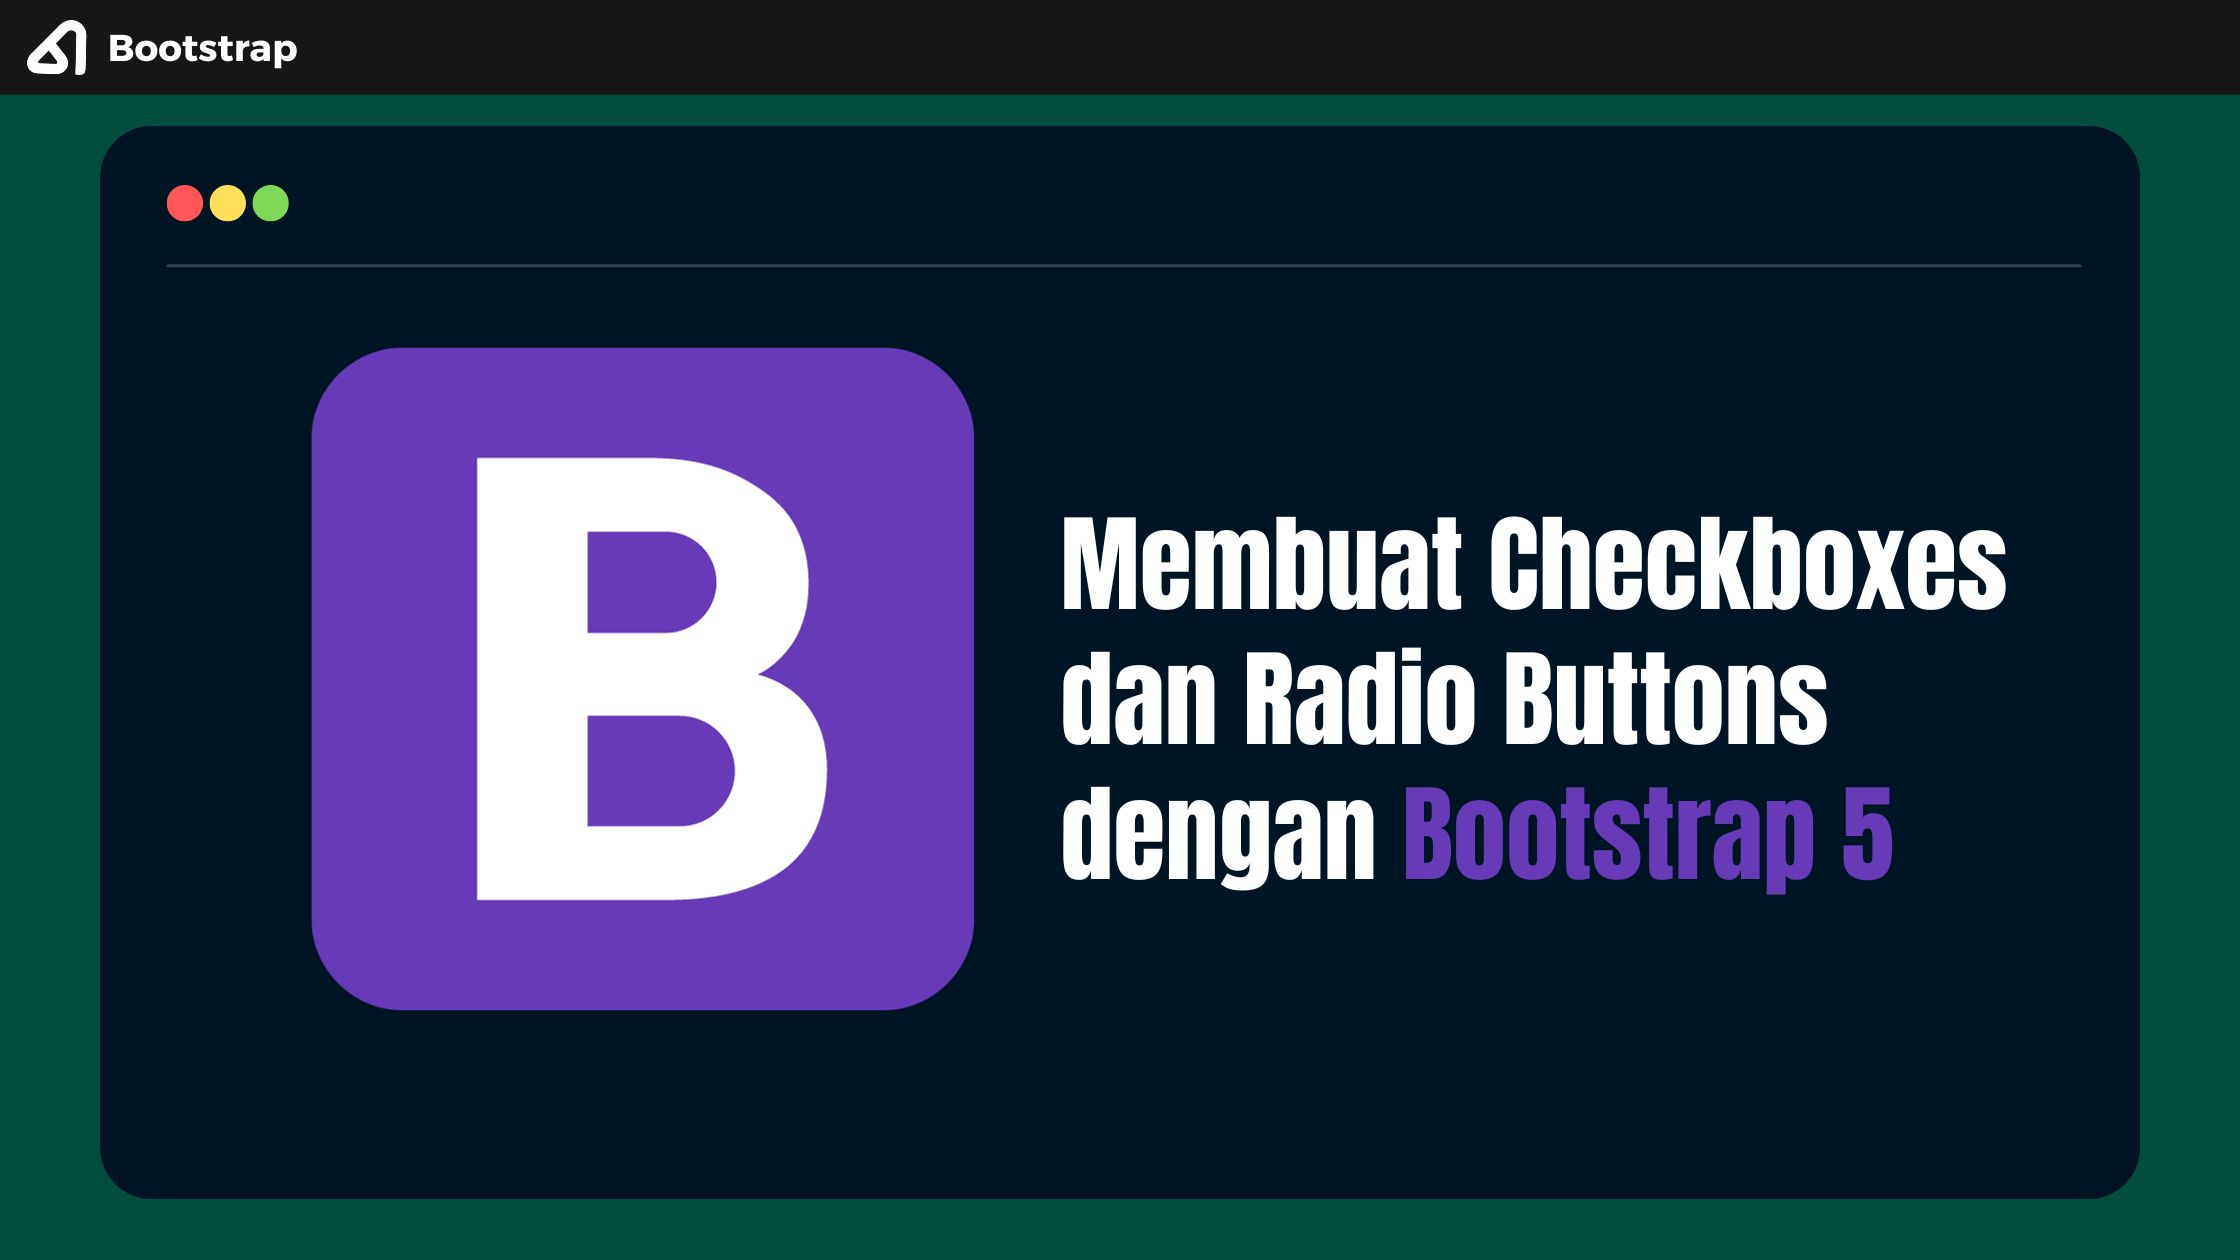 Membuat Checkboxes dan Radio Buttons dengan Bootstrap 5